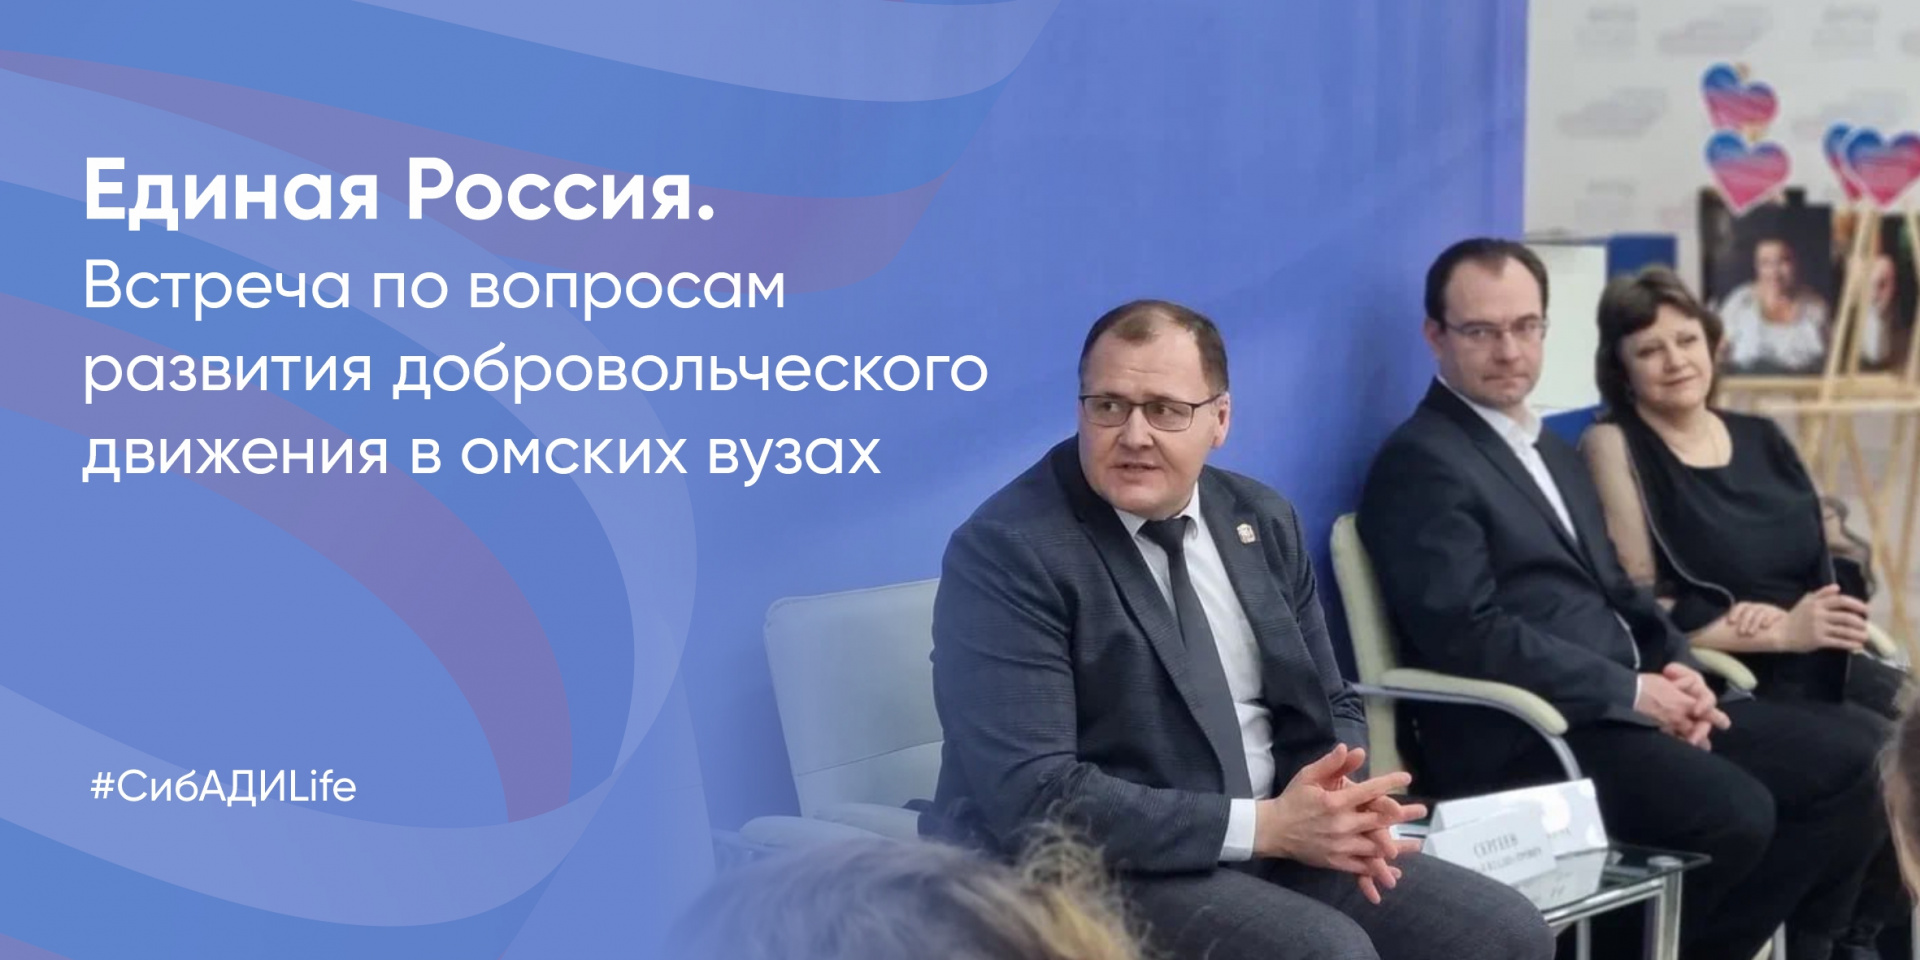 Штаб общественной поддержки партии «Единая Россия» организовал встречу по вопросам развития добровольческого движения в омских вузах